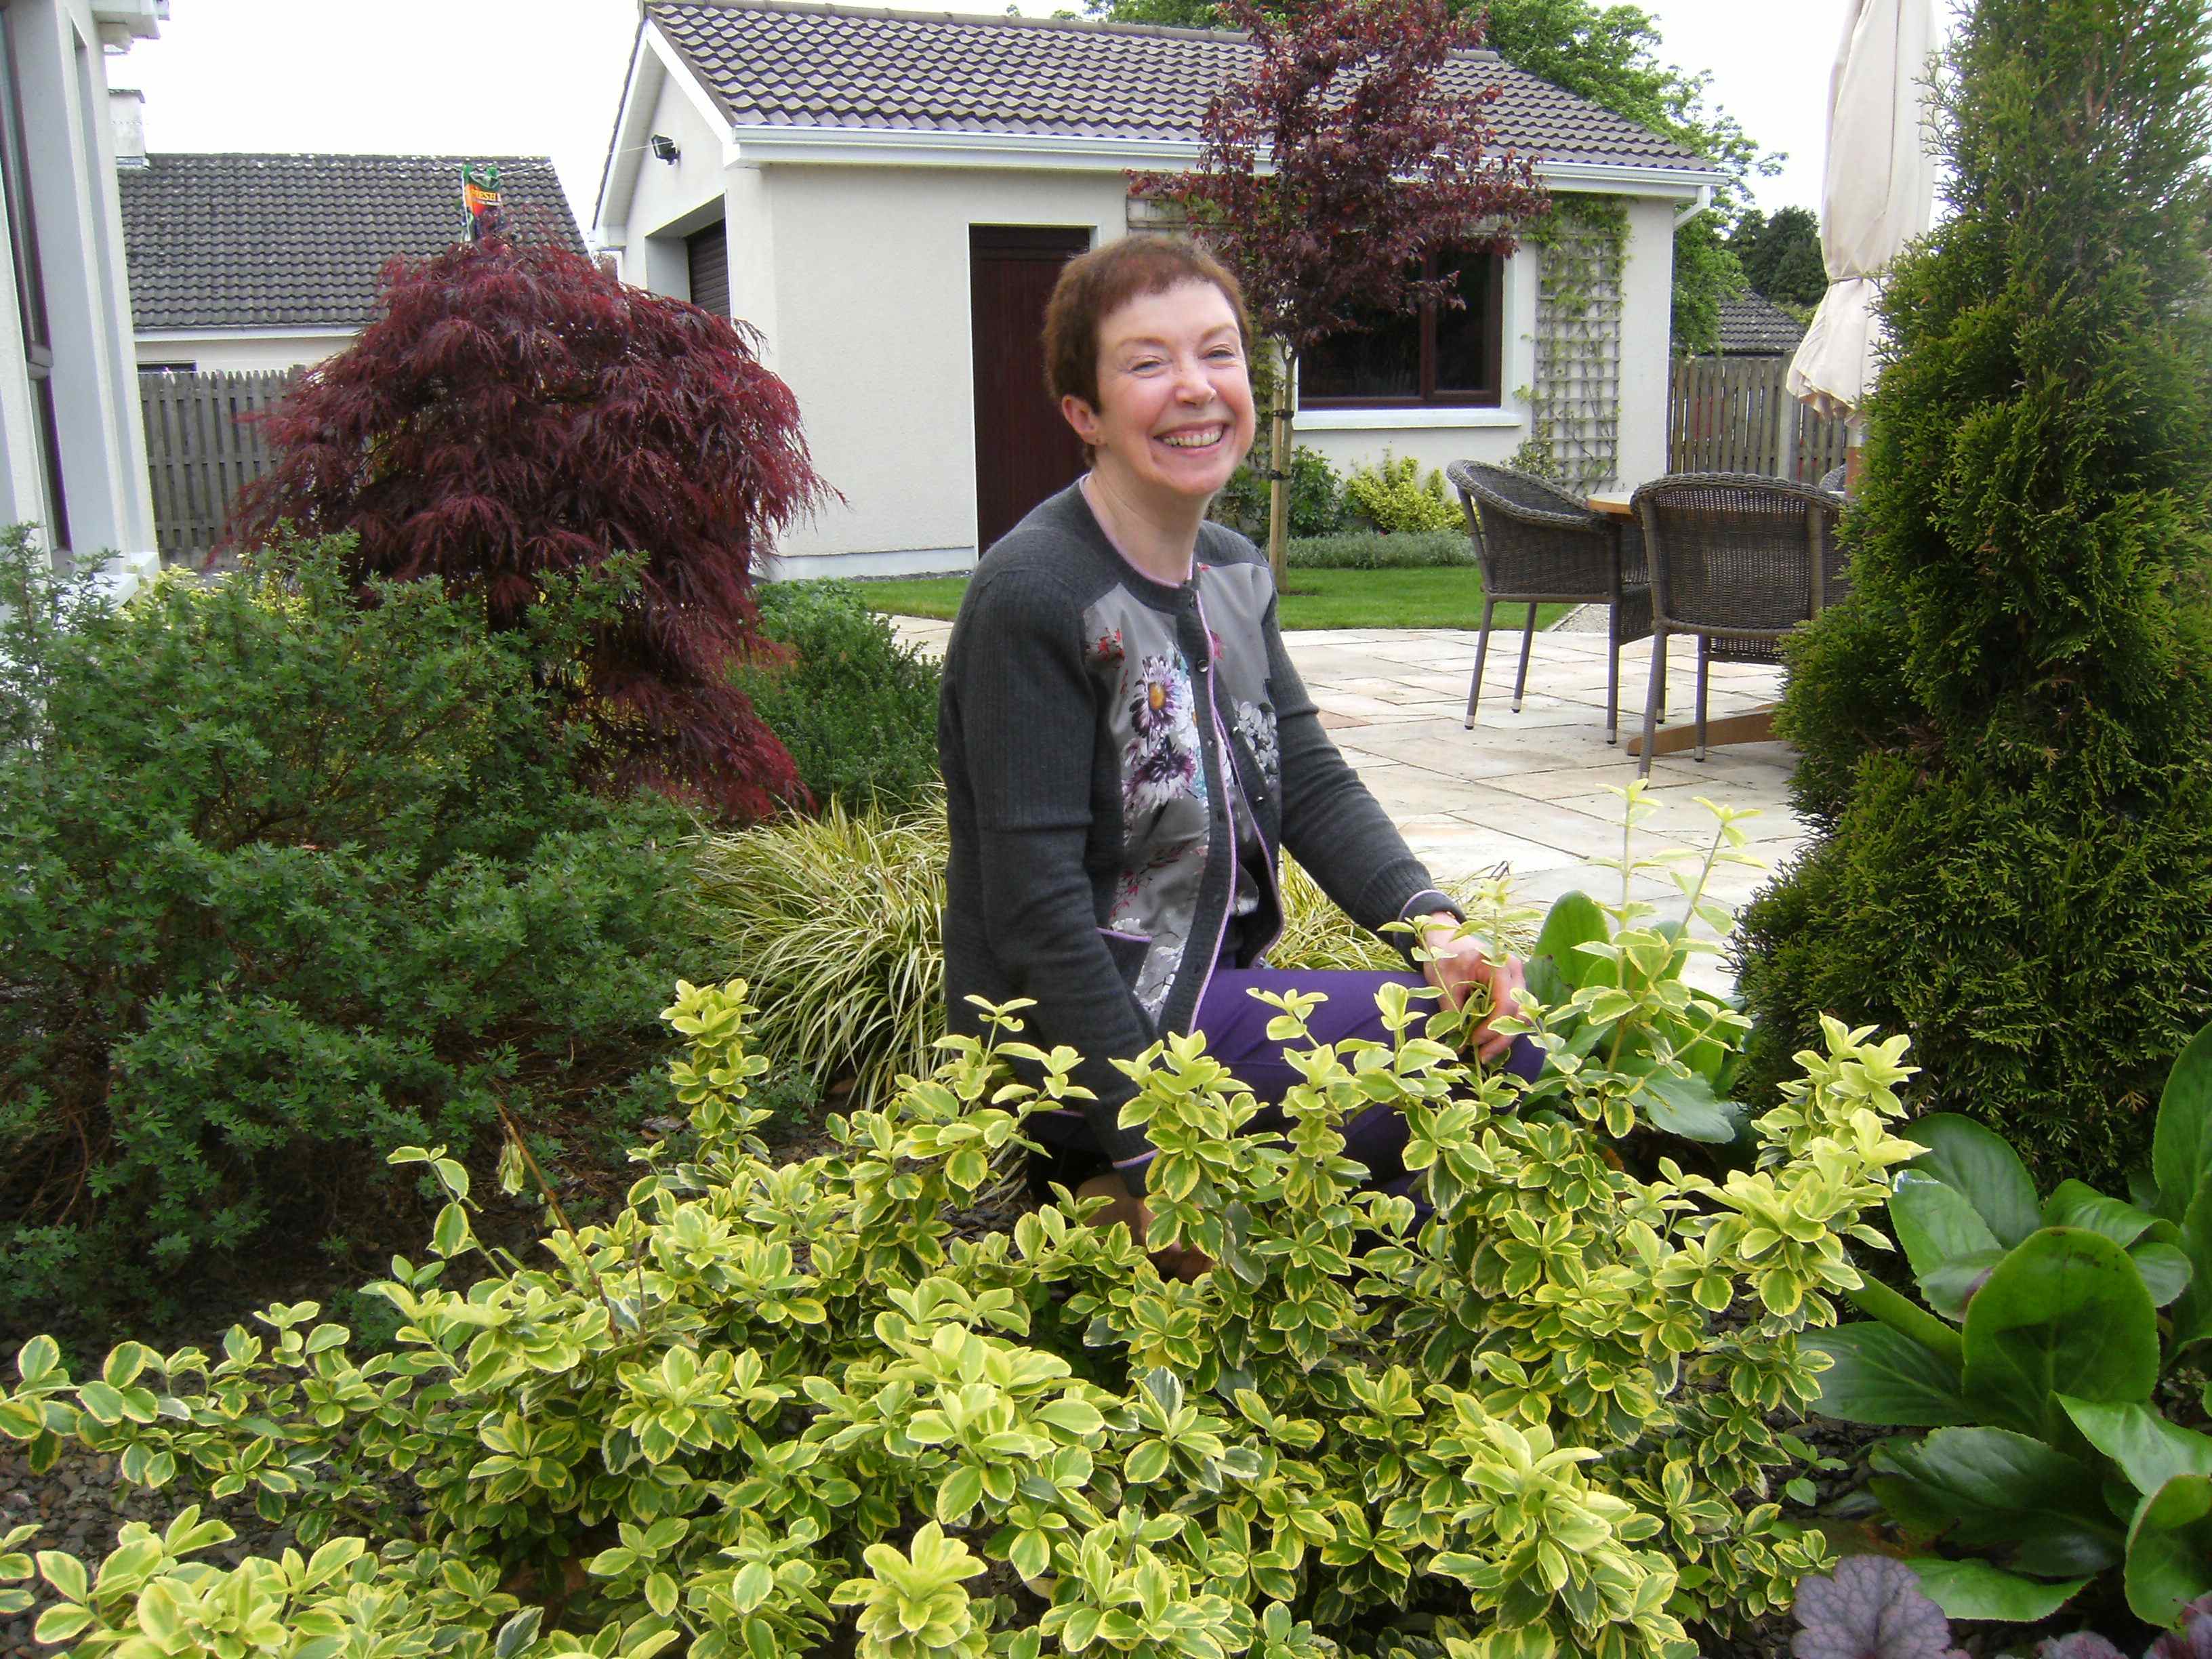 Mary Lombard's garden 2013